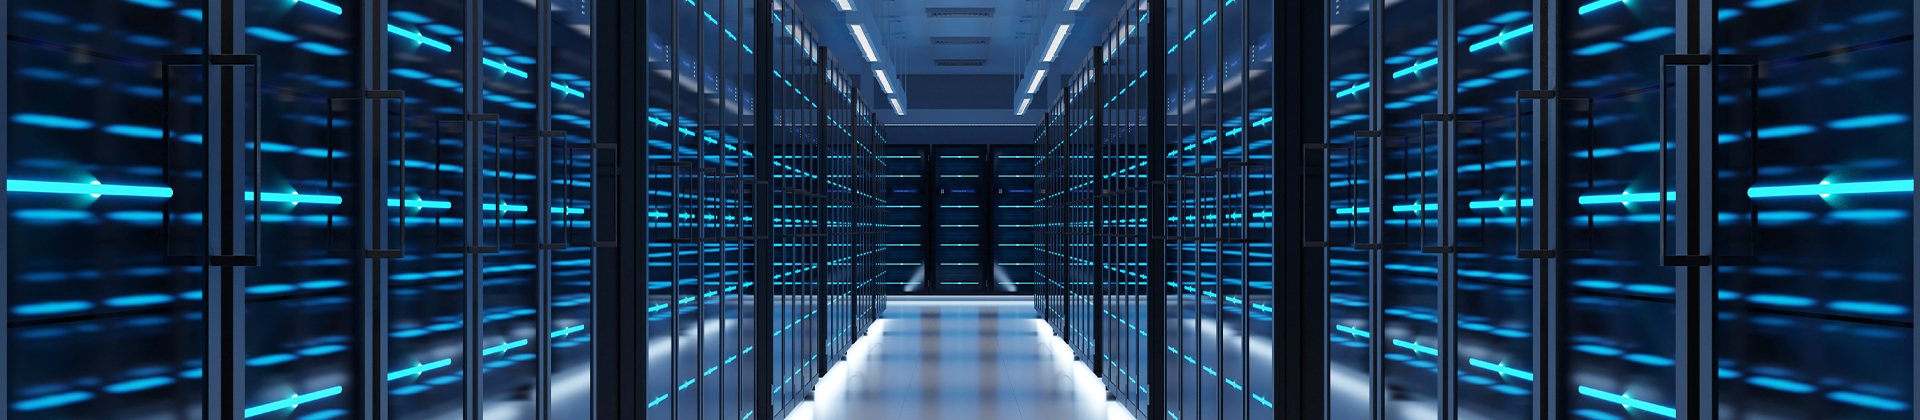 Immagine ampia di una sala server di un data center